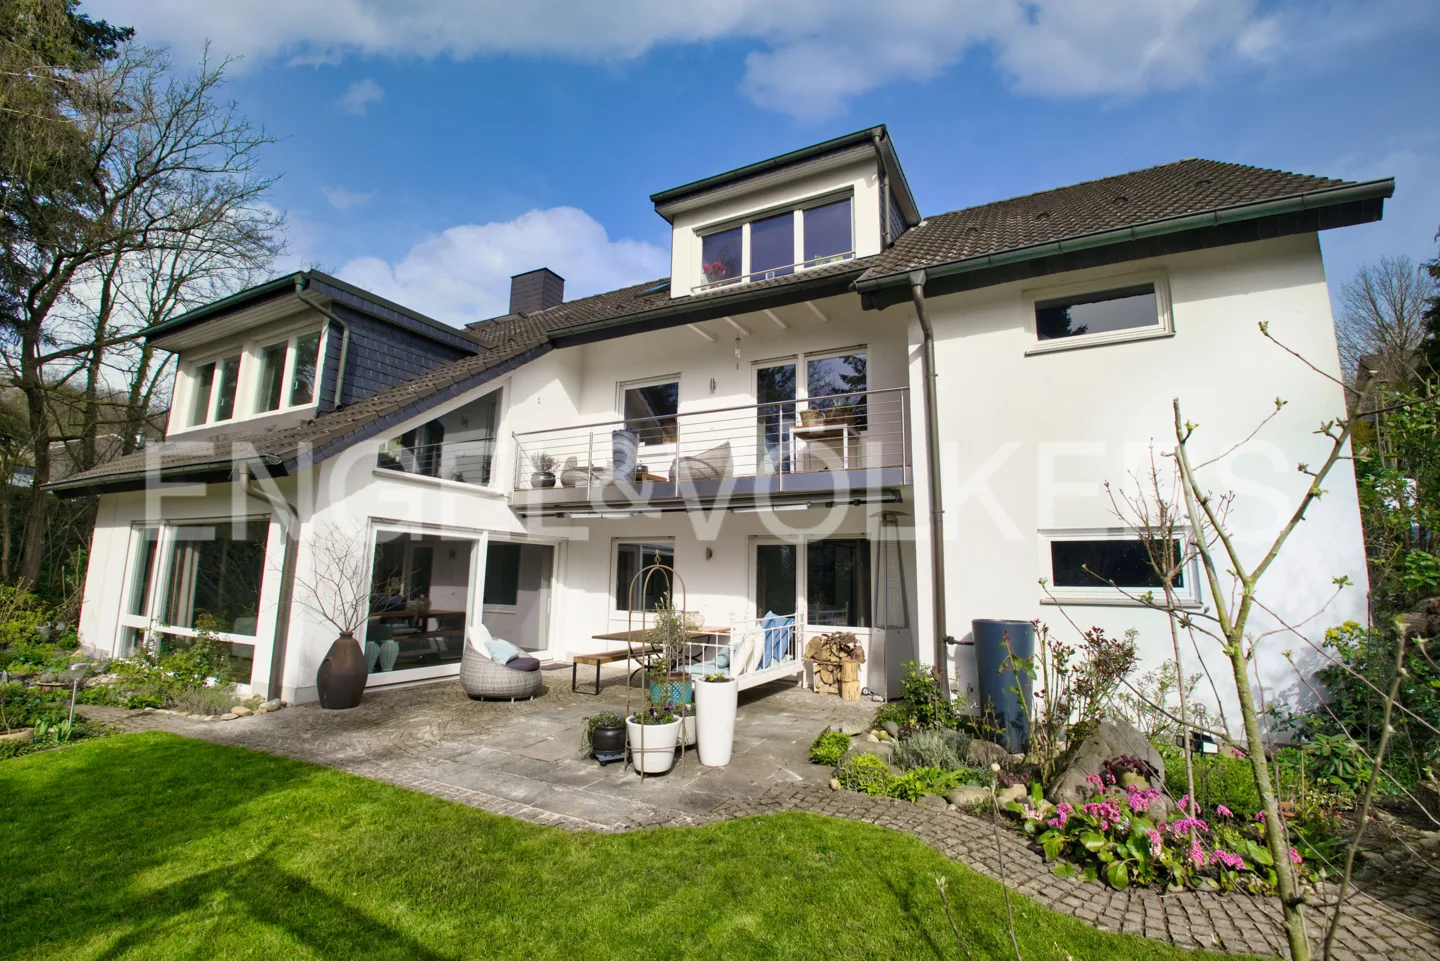 Tolles Haus, schöner Garten, gute Anbindung - Ihr neues Traumhaus in Eppstein!